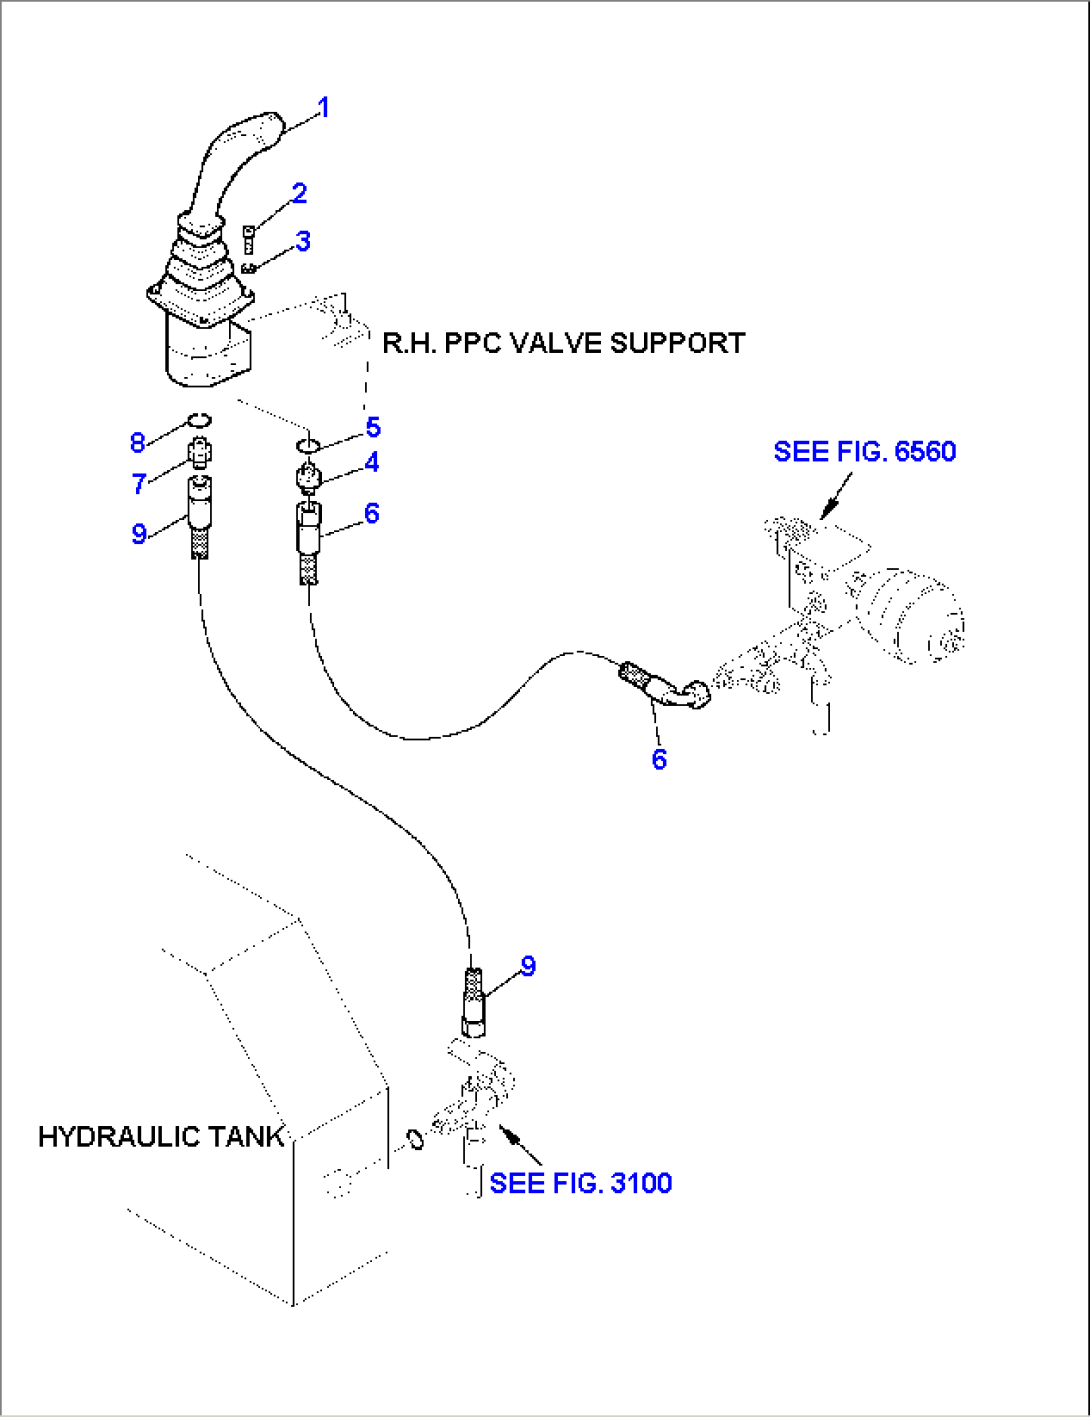 HYDRAULIC PIPING R.H. (SERVOCONTROL LINE)